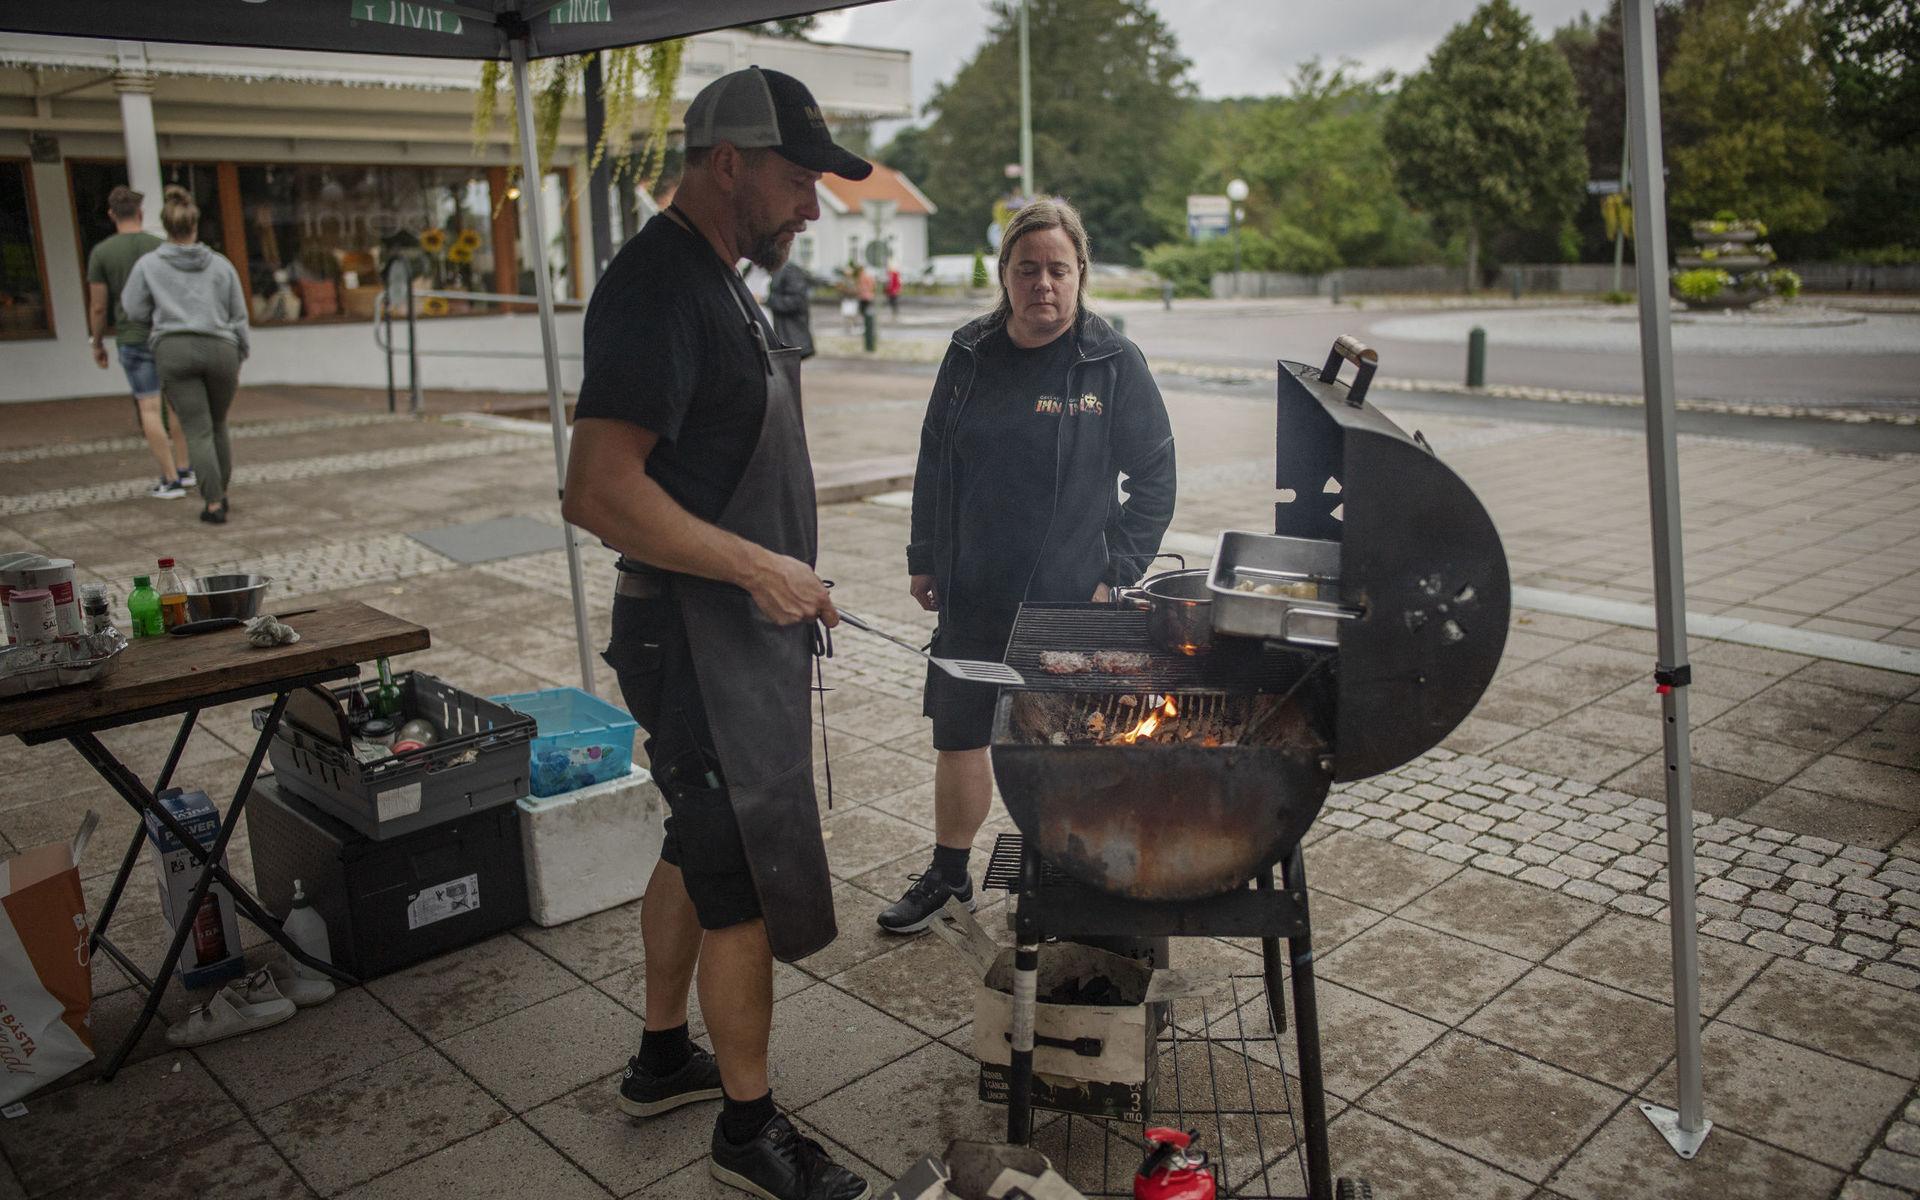 Vill framhäva köttets smak. Li Berglund och maken Christer Karlsson driver barbecuerestaurangen Grillat i Imnäs utanför Ramsele i Västernorrland. I Lerum deltog de i tävlingen SM i hamburgare.